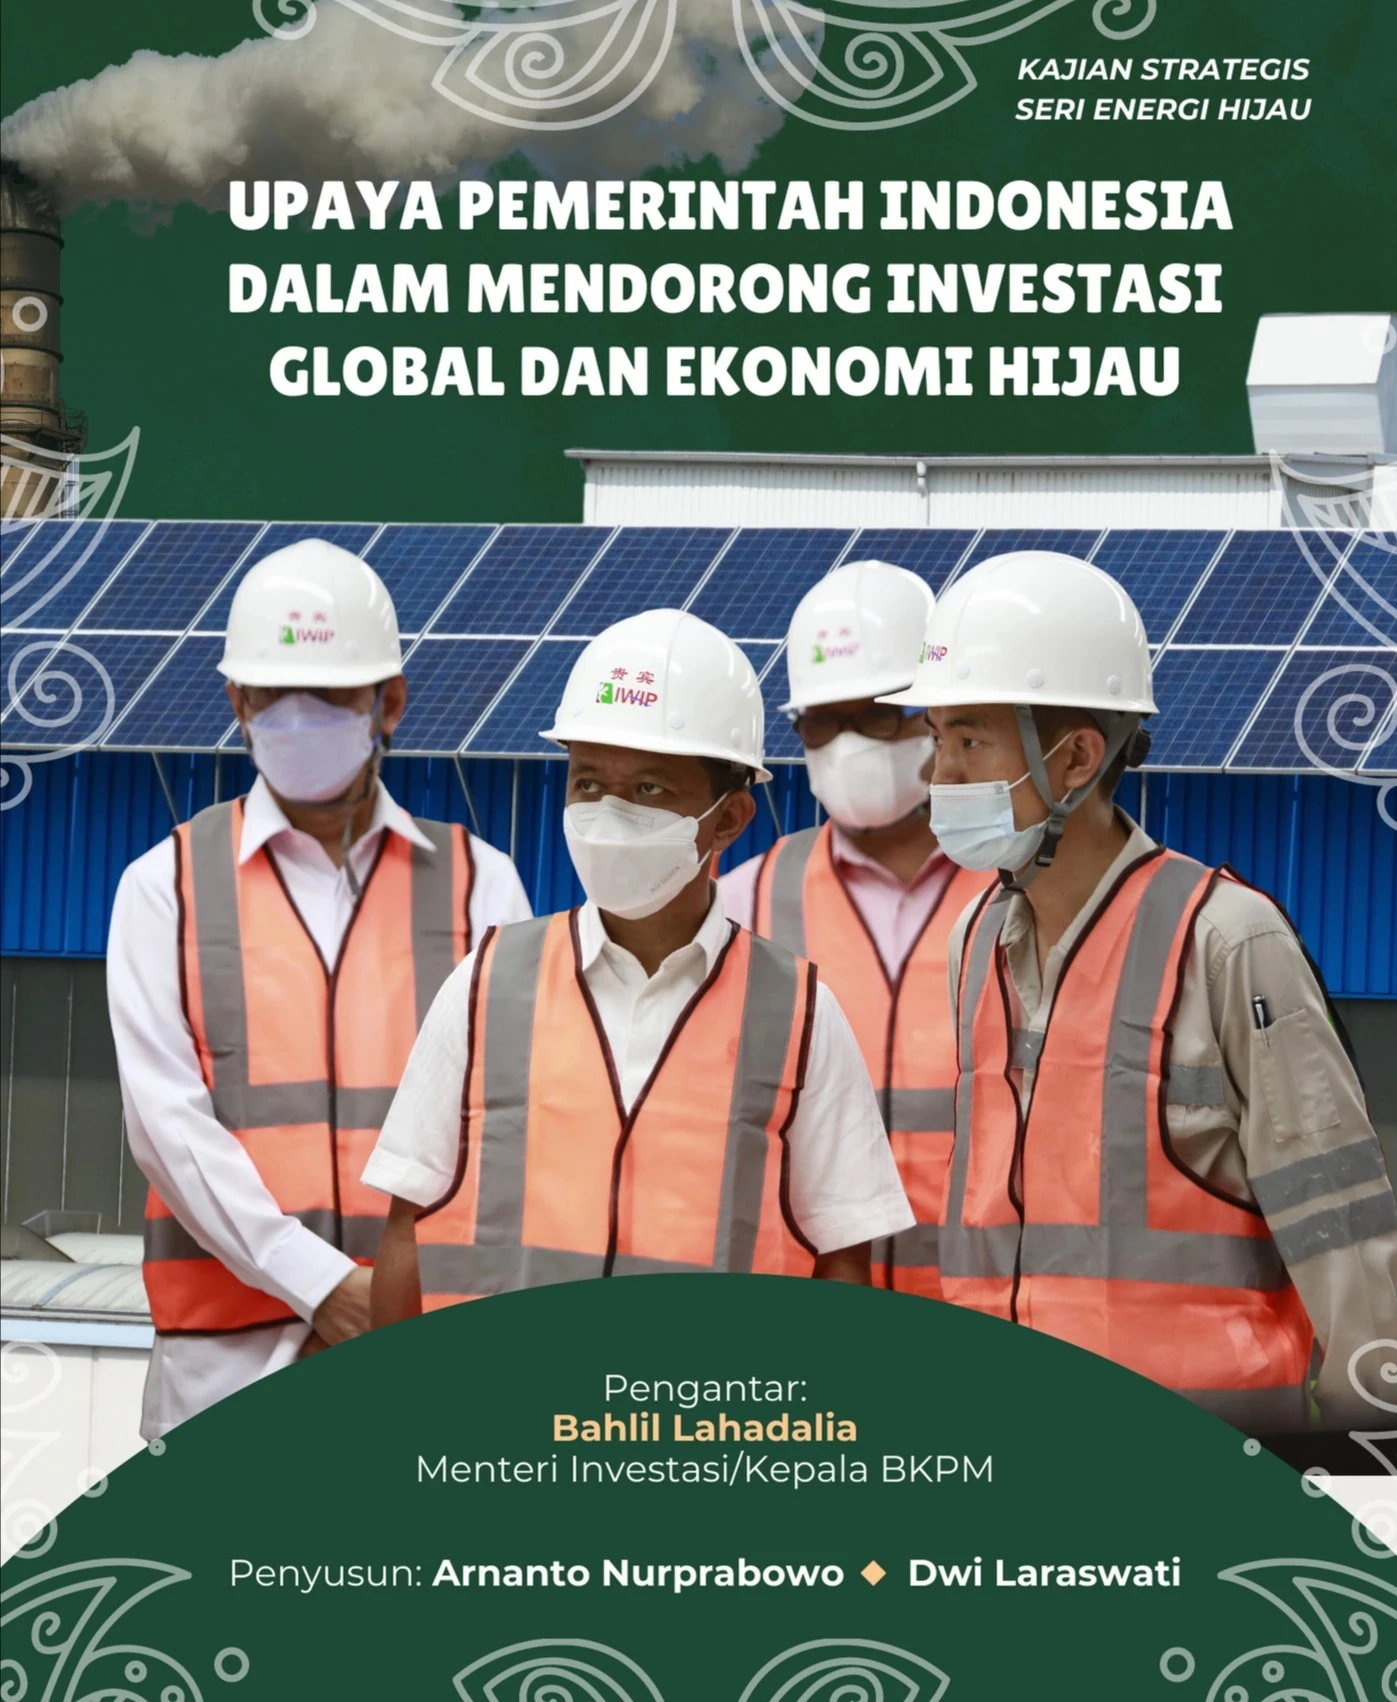 Kajian Upaya Pemerintah Indonesia dalam Mendorong Investasi Global dan Ekonomi Hijau